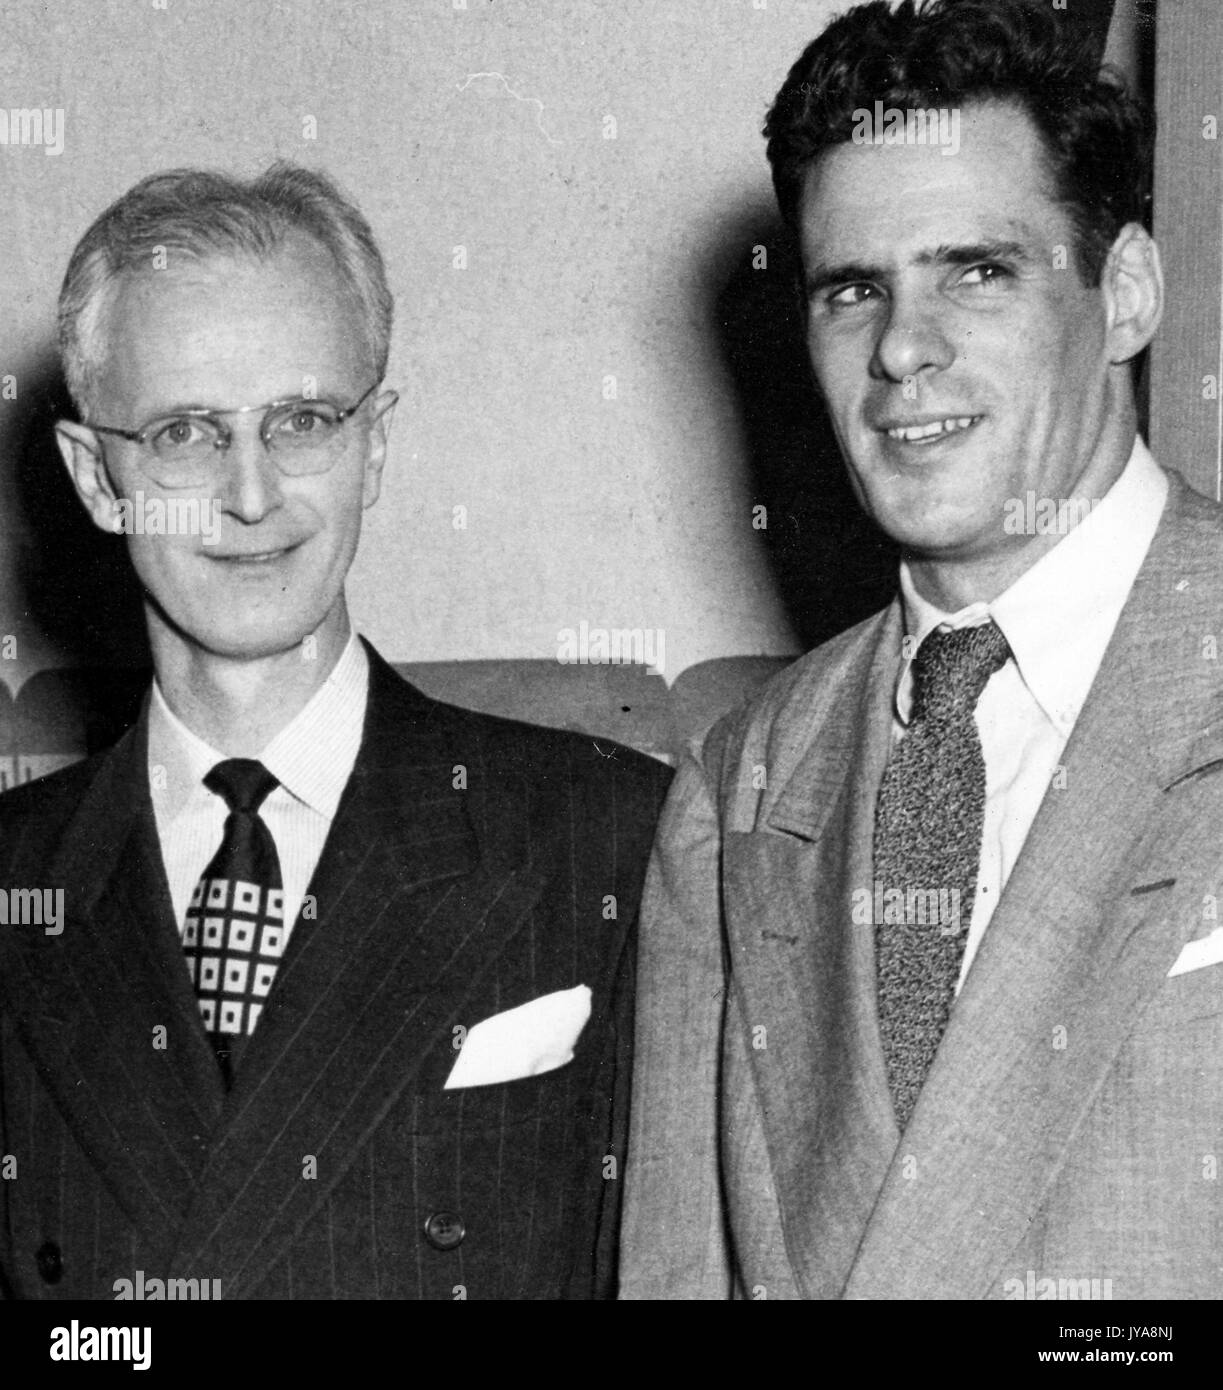 Presentador de televisión americana Lynn Poole (izquierda) de pie con el productor y director de la Universidad Johns Hopkins science review show televisivo, Anthony farrar (derecha), de 1951. Foto de stock